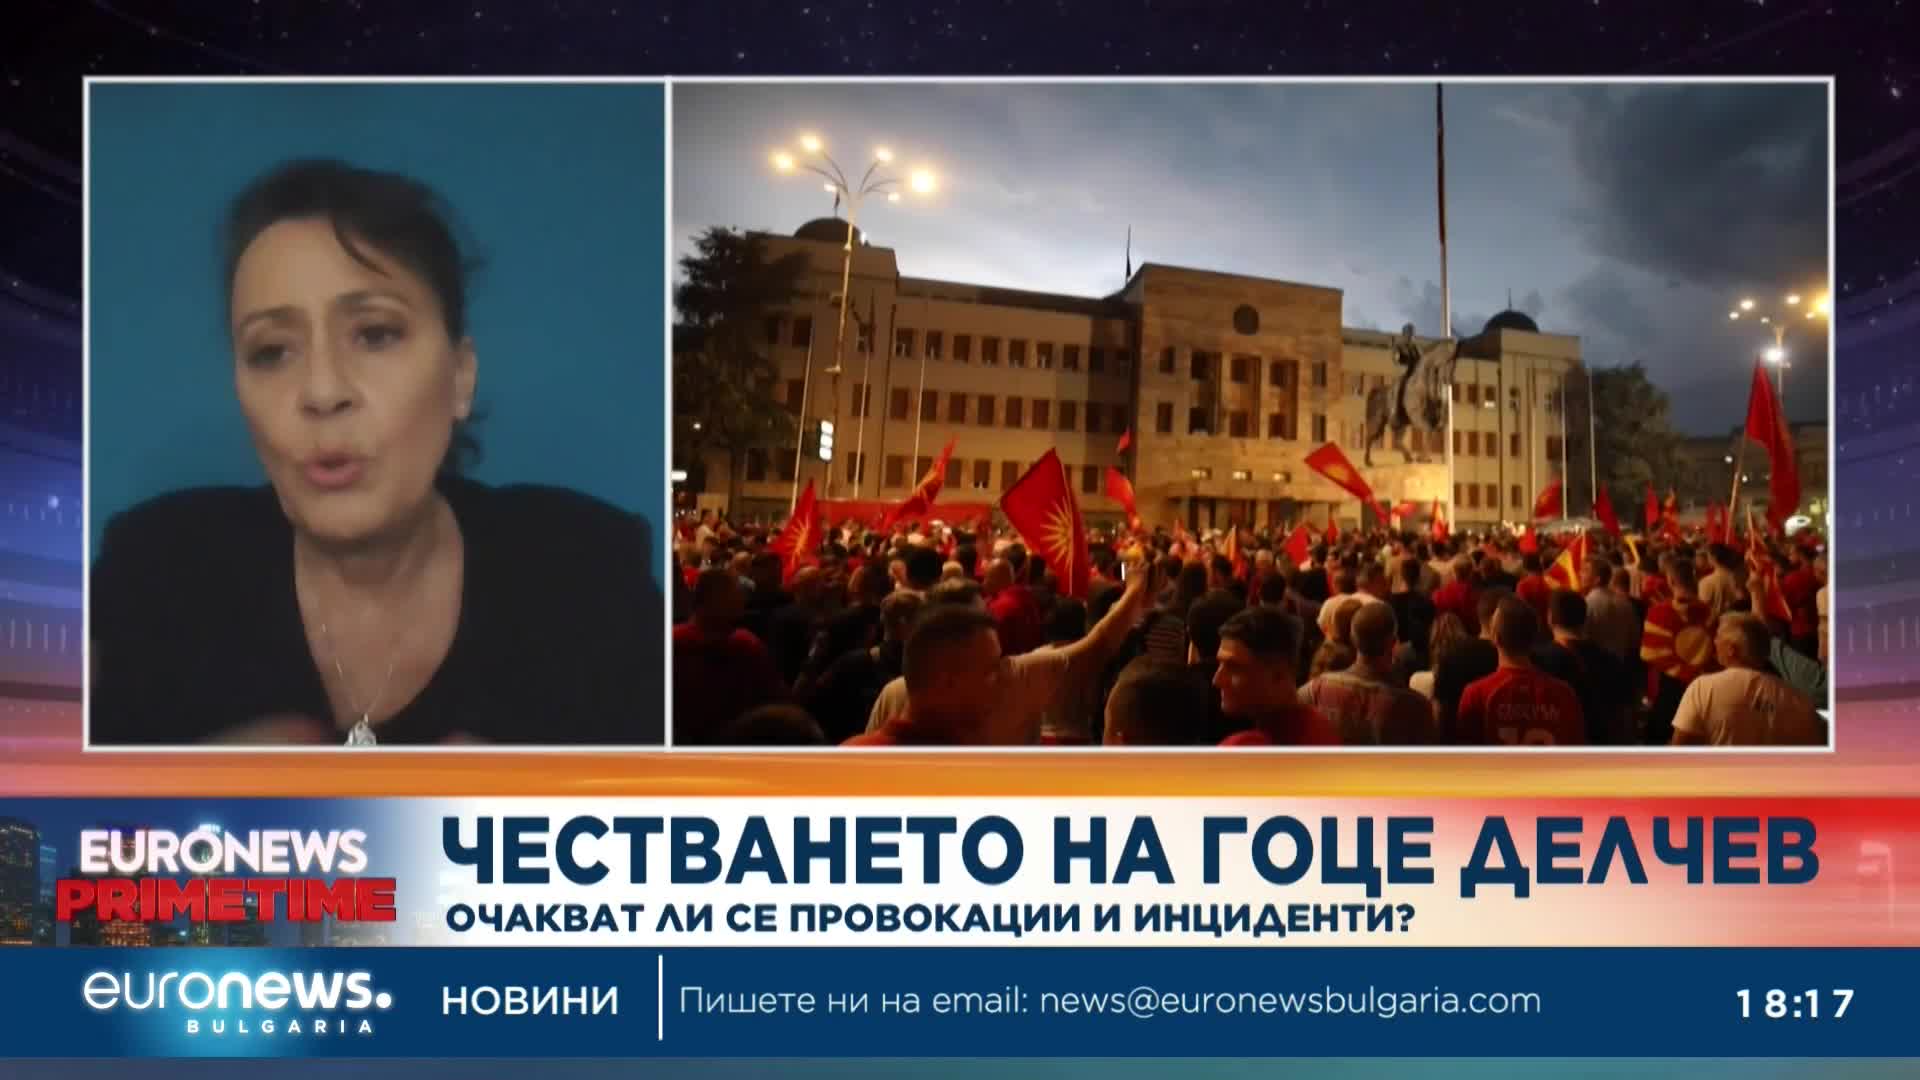 Маринела Величкова: Има усещане, че властите тук бездействат за атаките над български клубове